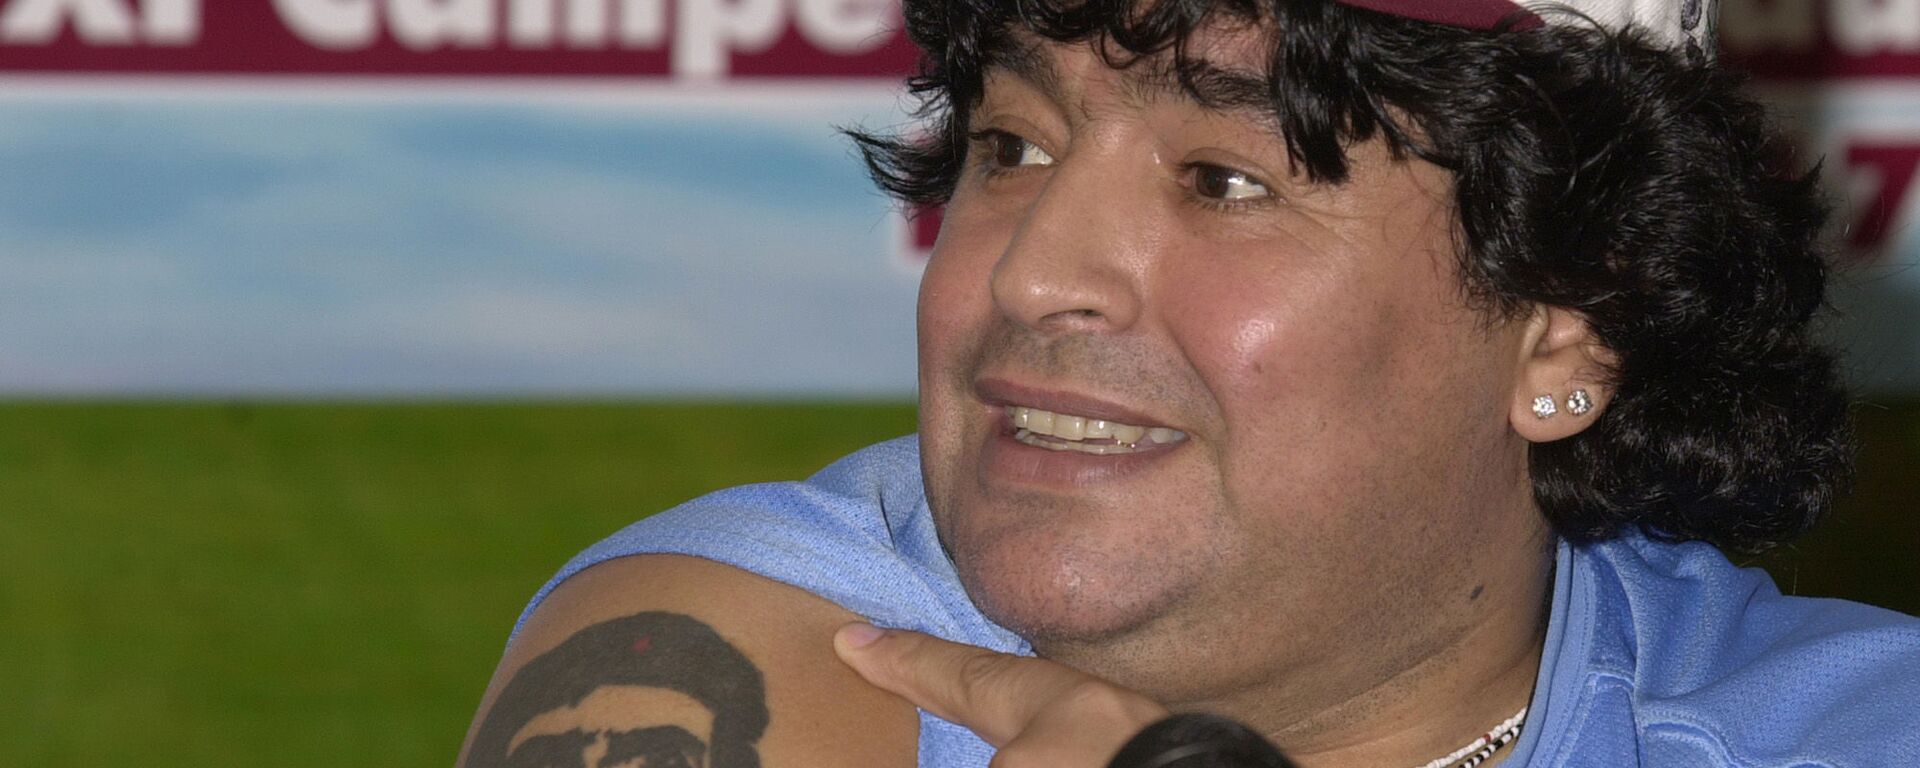 Diego Armando Maradona y su tatuaje del Che Guevara  - Sputnik Mundo, 1920, 29.10.2021